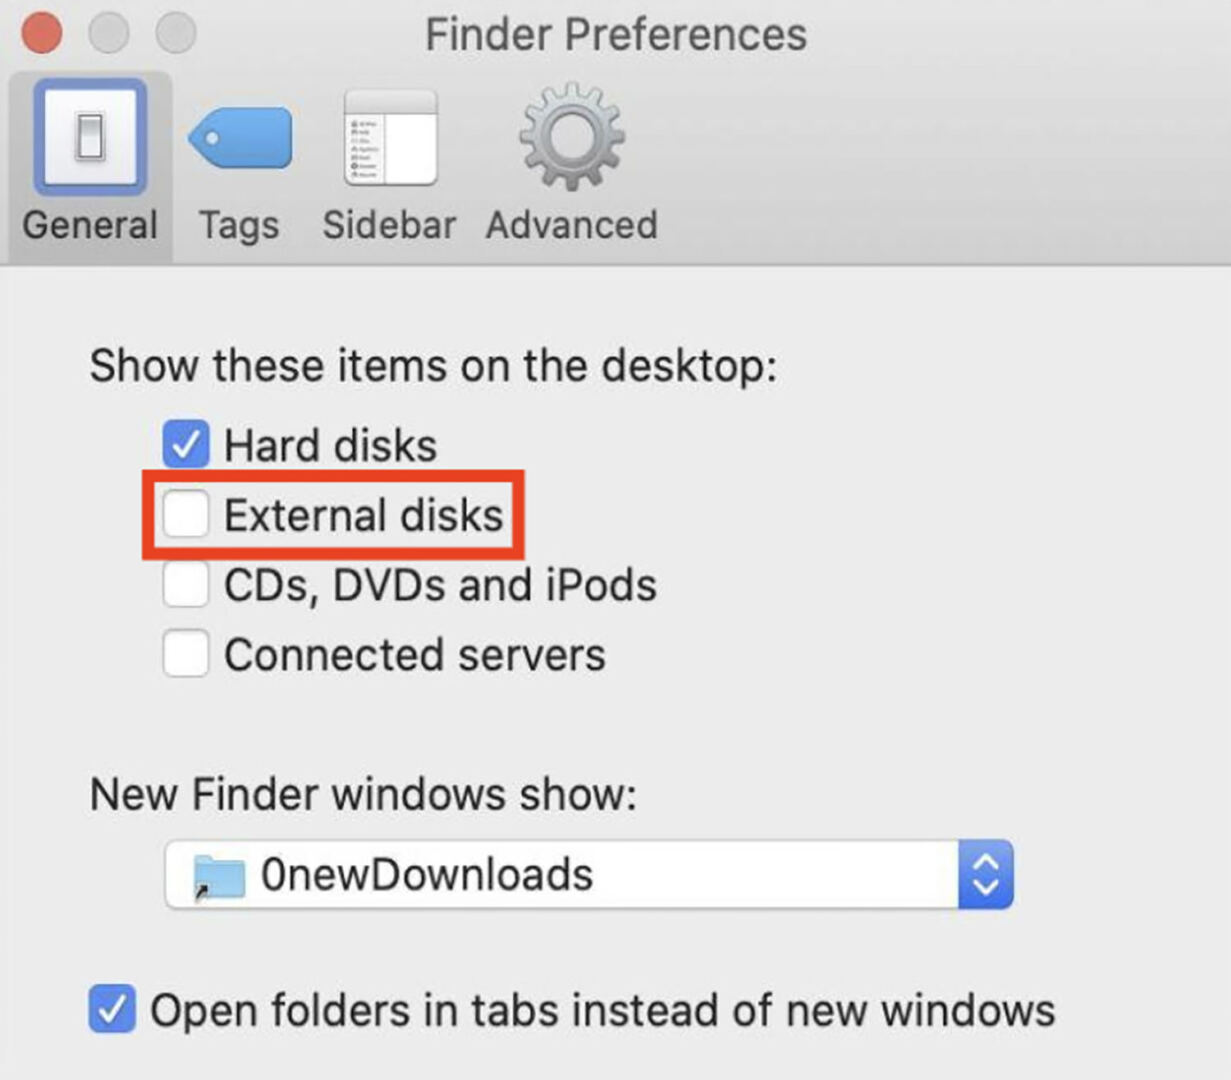 Enabling External Disks in Finder Preferences